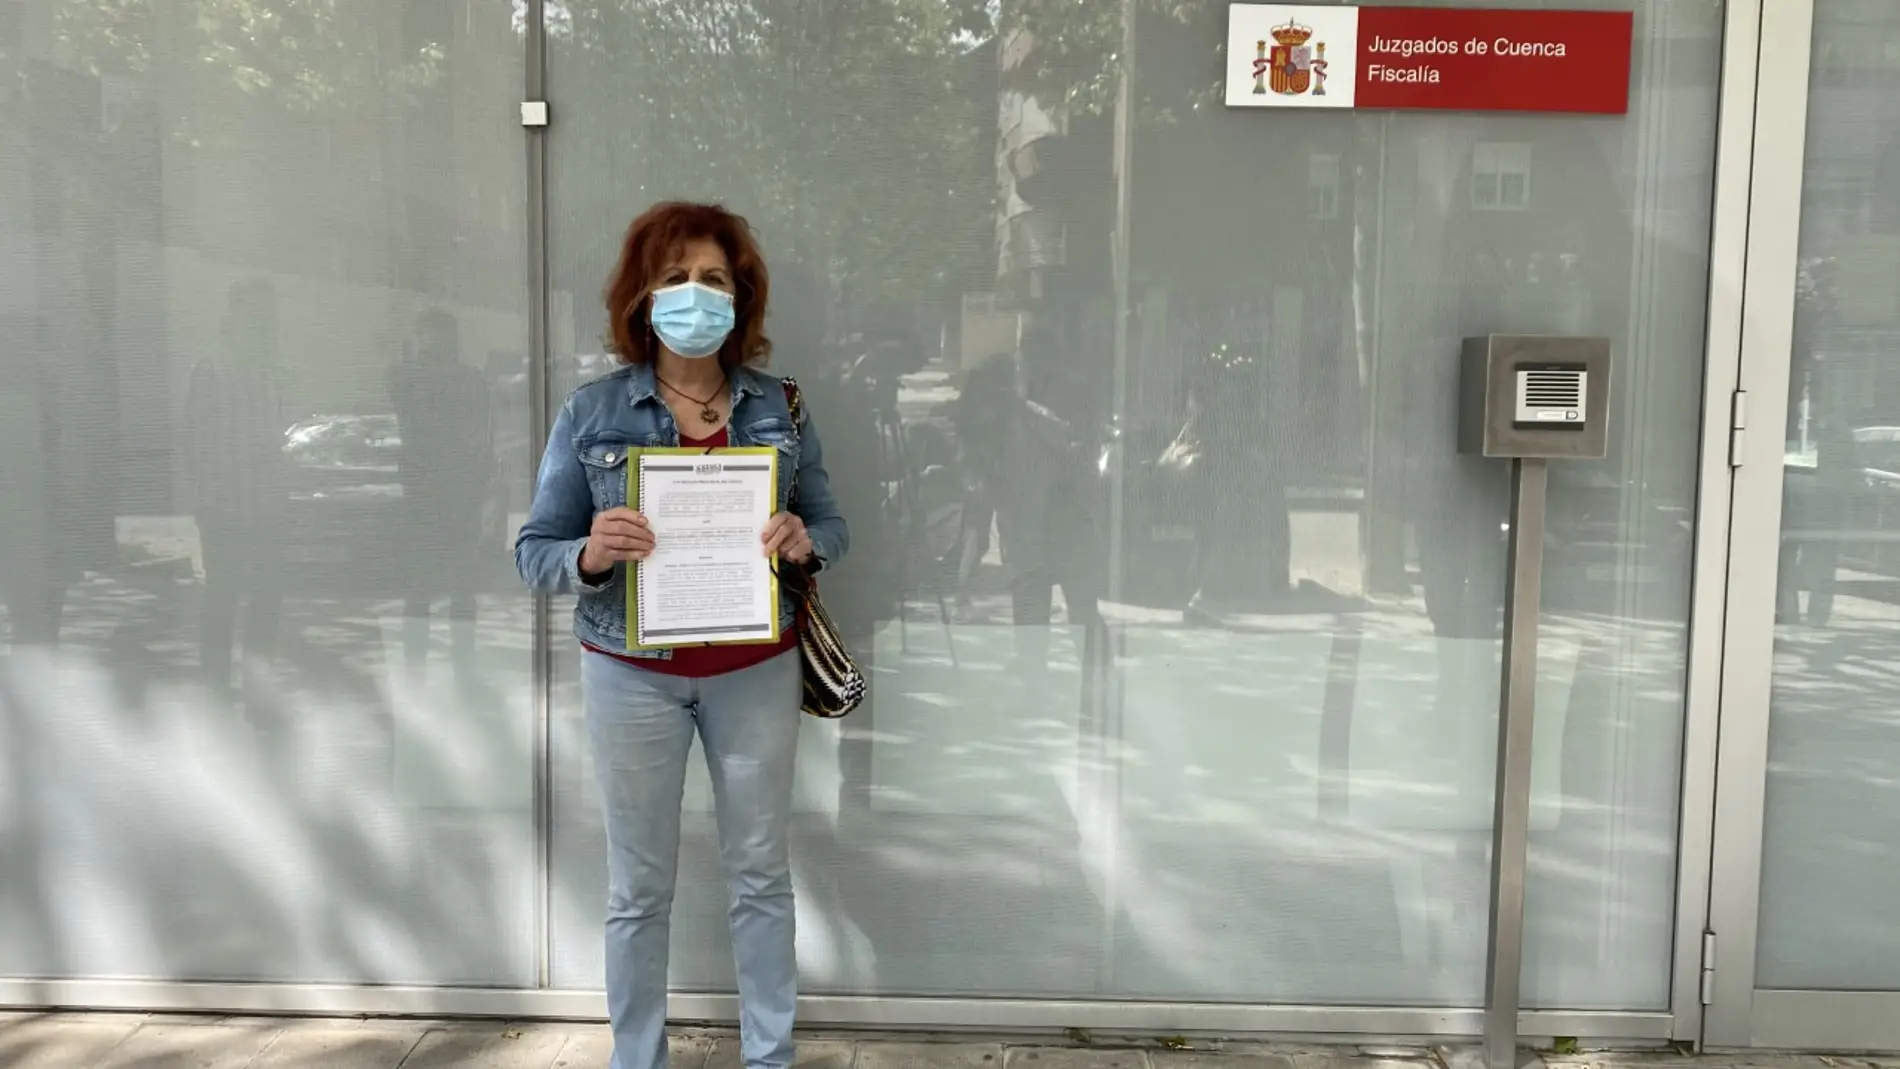 La concejal de Podemos, María Ángeles García, poco antes de presentar el escrito ante la Fiscalía de Cuenca